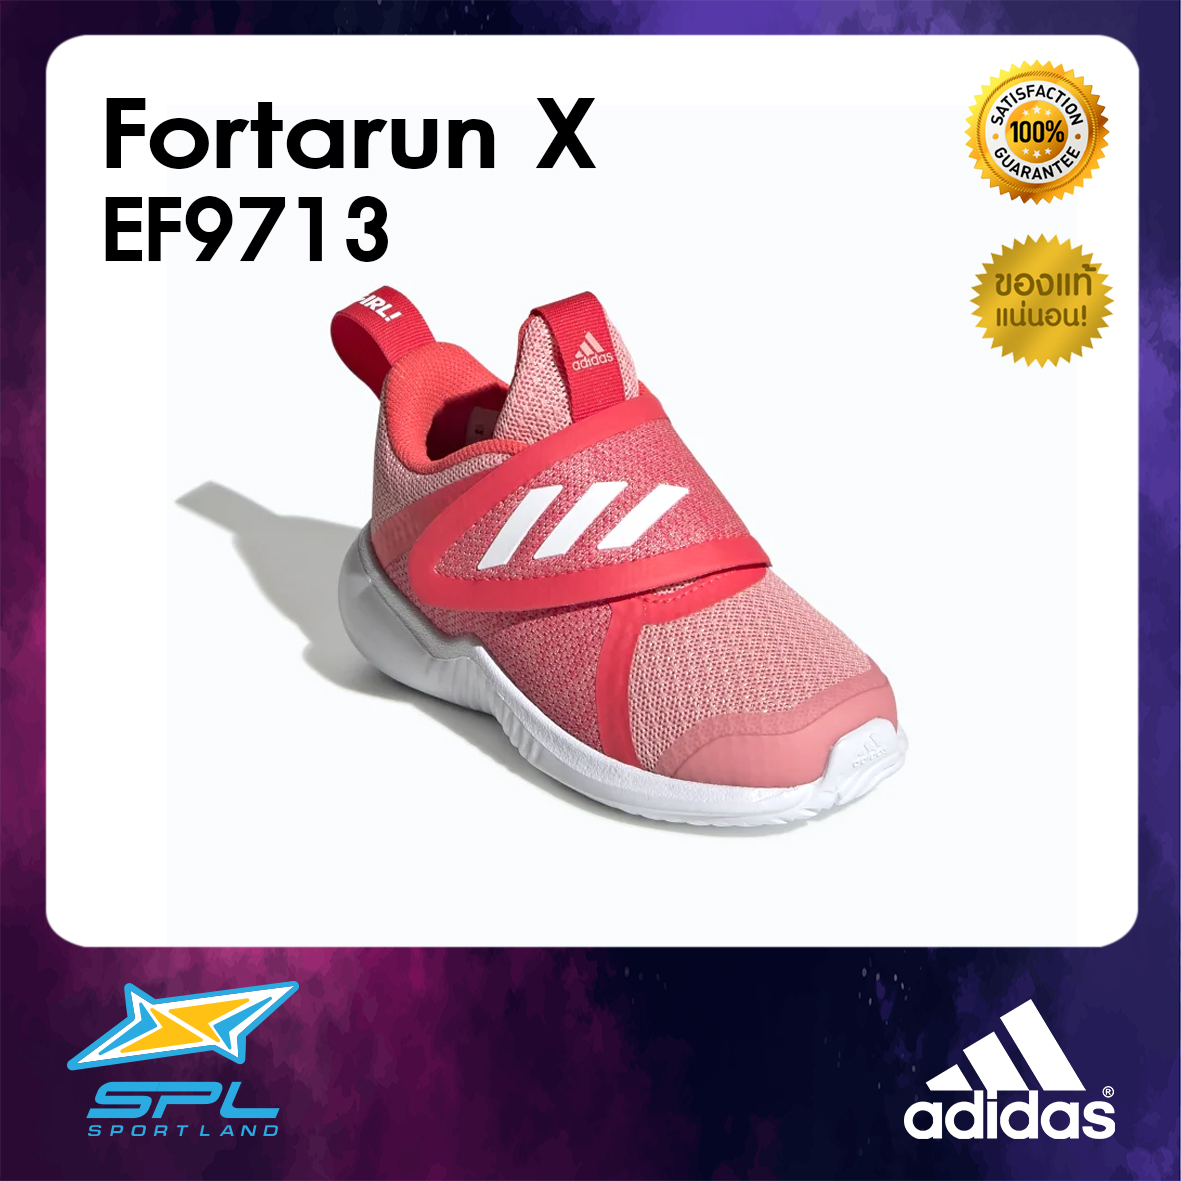 Adidas รองเท้าวิ่งเด็ก รองเท้าแฟชั่น รองเท้ากีฬา รองเท้าผ้าใบ รองเท้าเด็ก อาดิดาส Running IG Shoe Fortarun X EF9713 (1200)